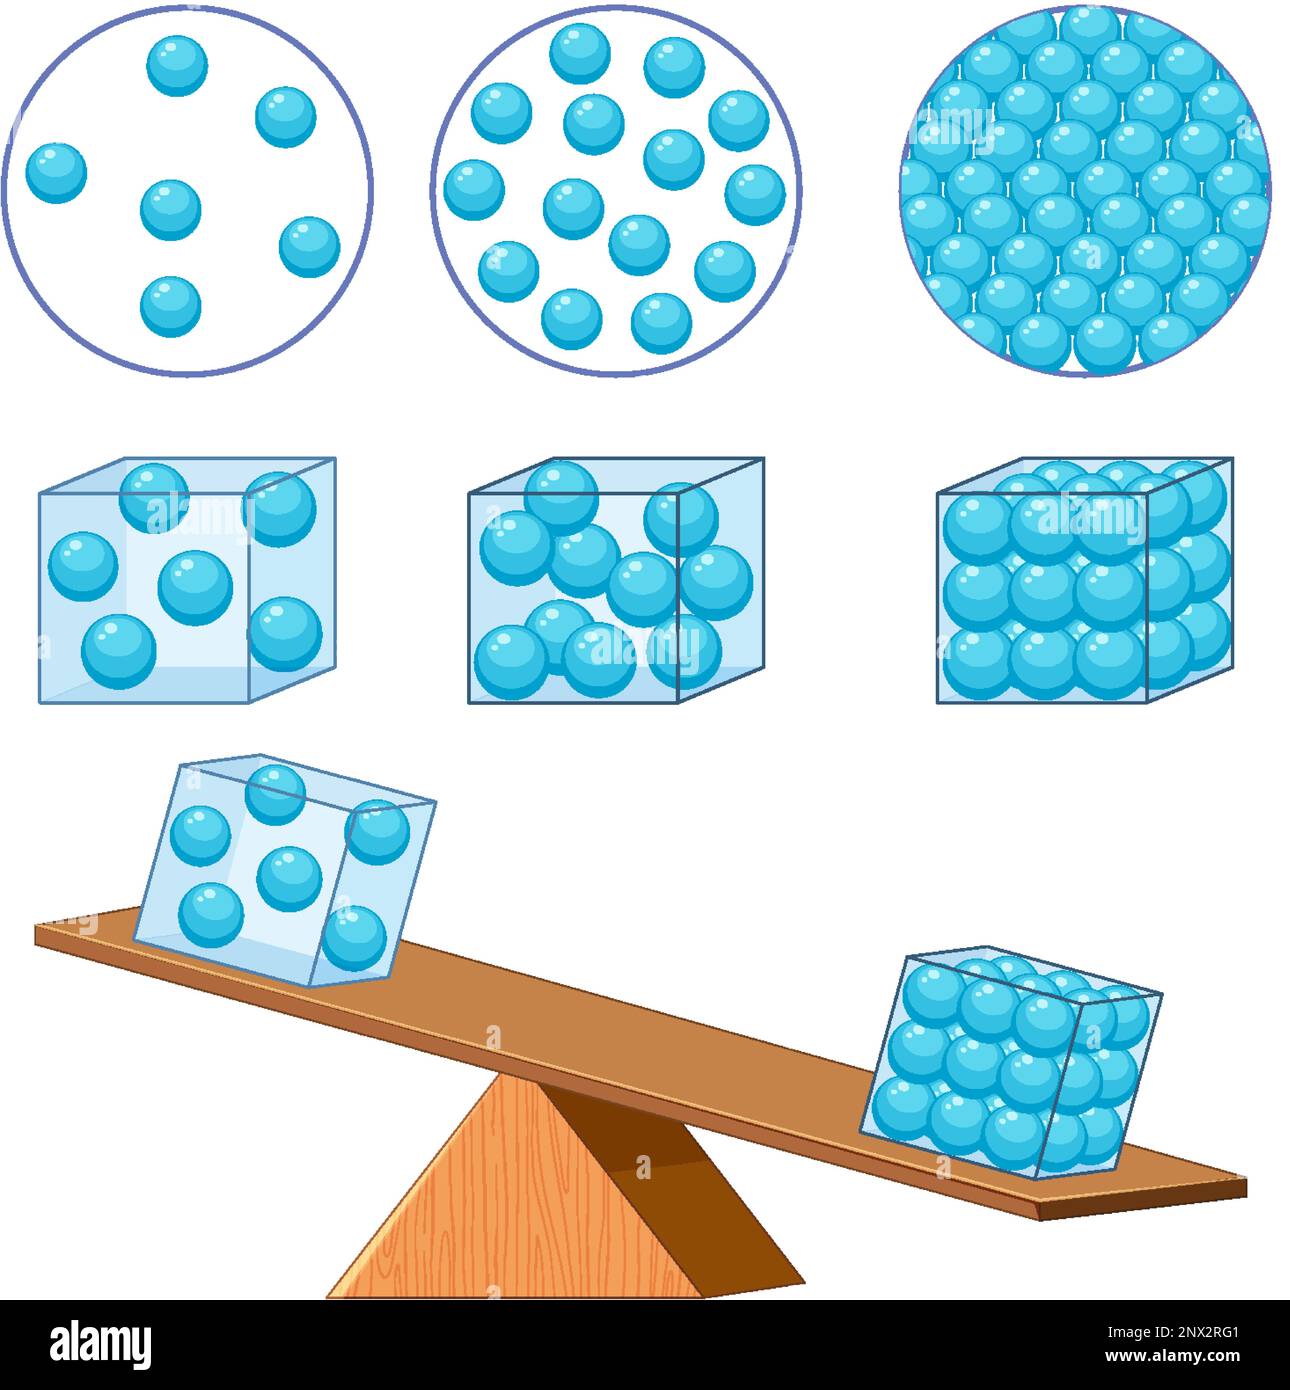 stati di densità della materia per l'apprendimento dell'illustrazione  chimica e fisica Immagine e Vettoriale - Alamy